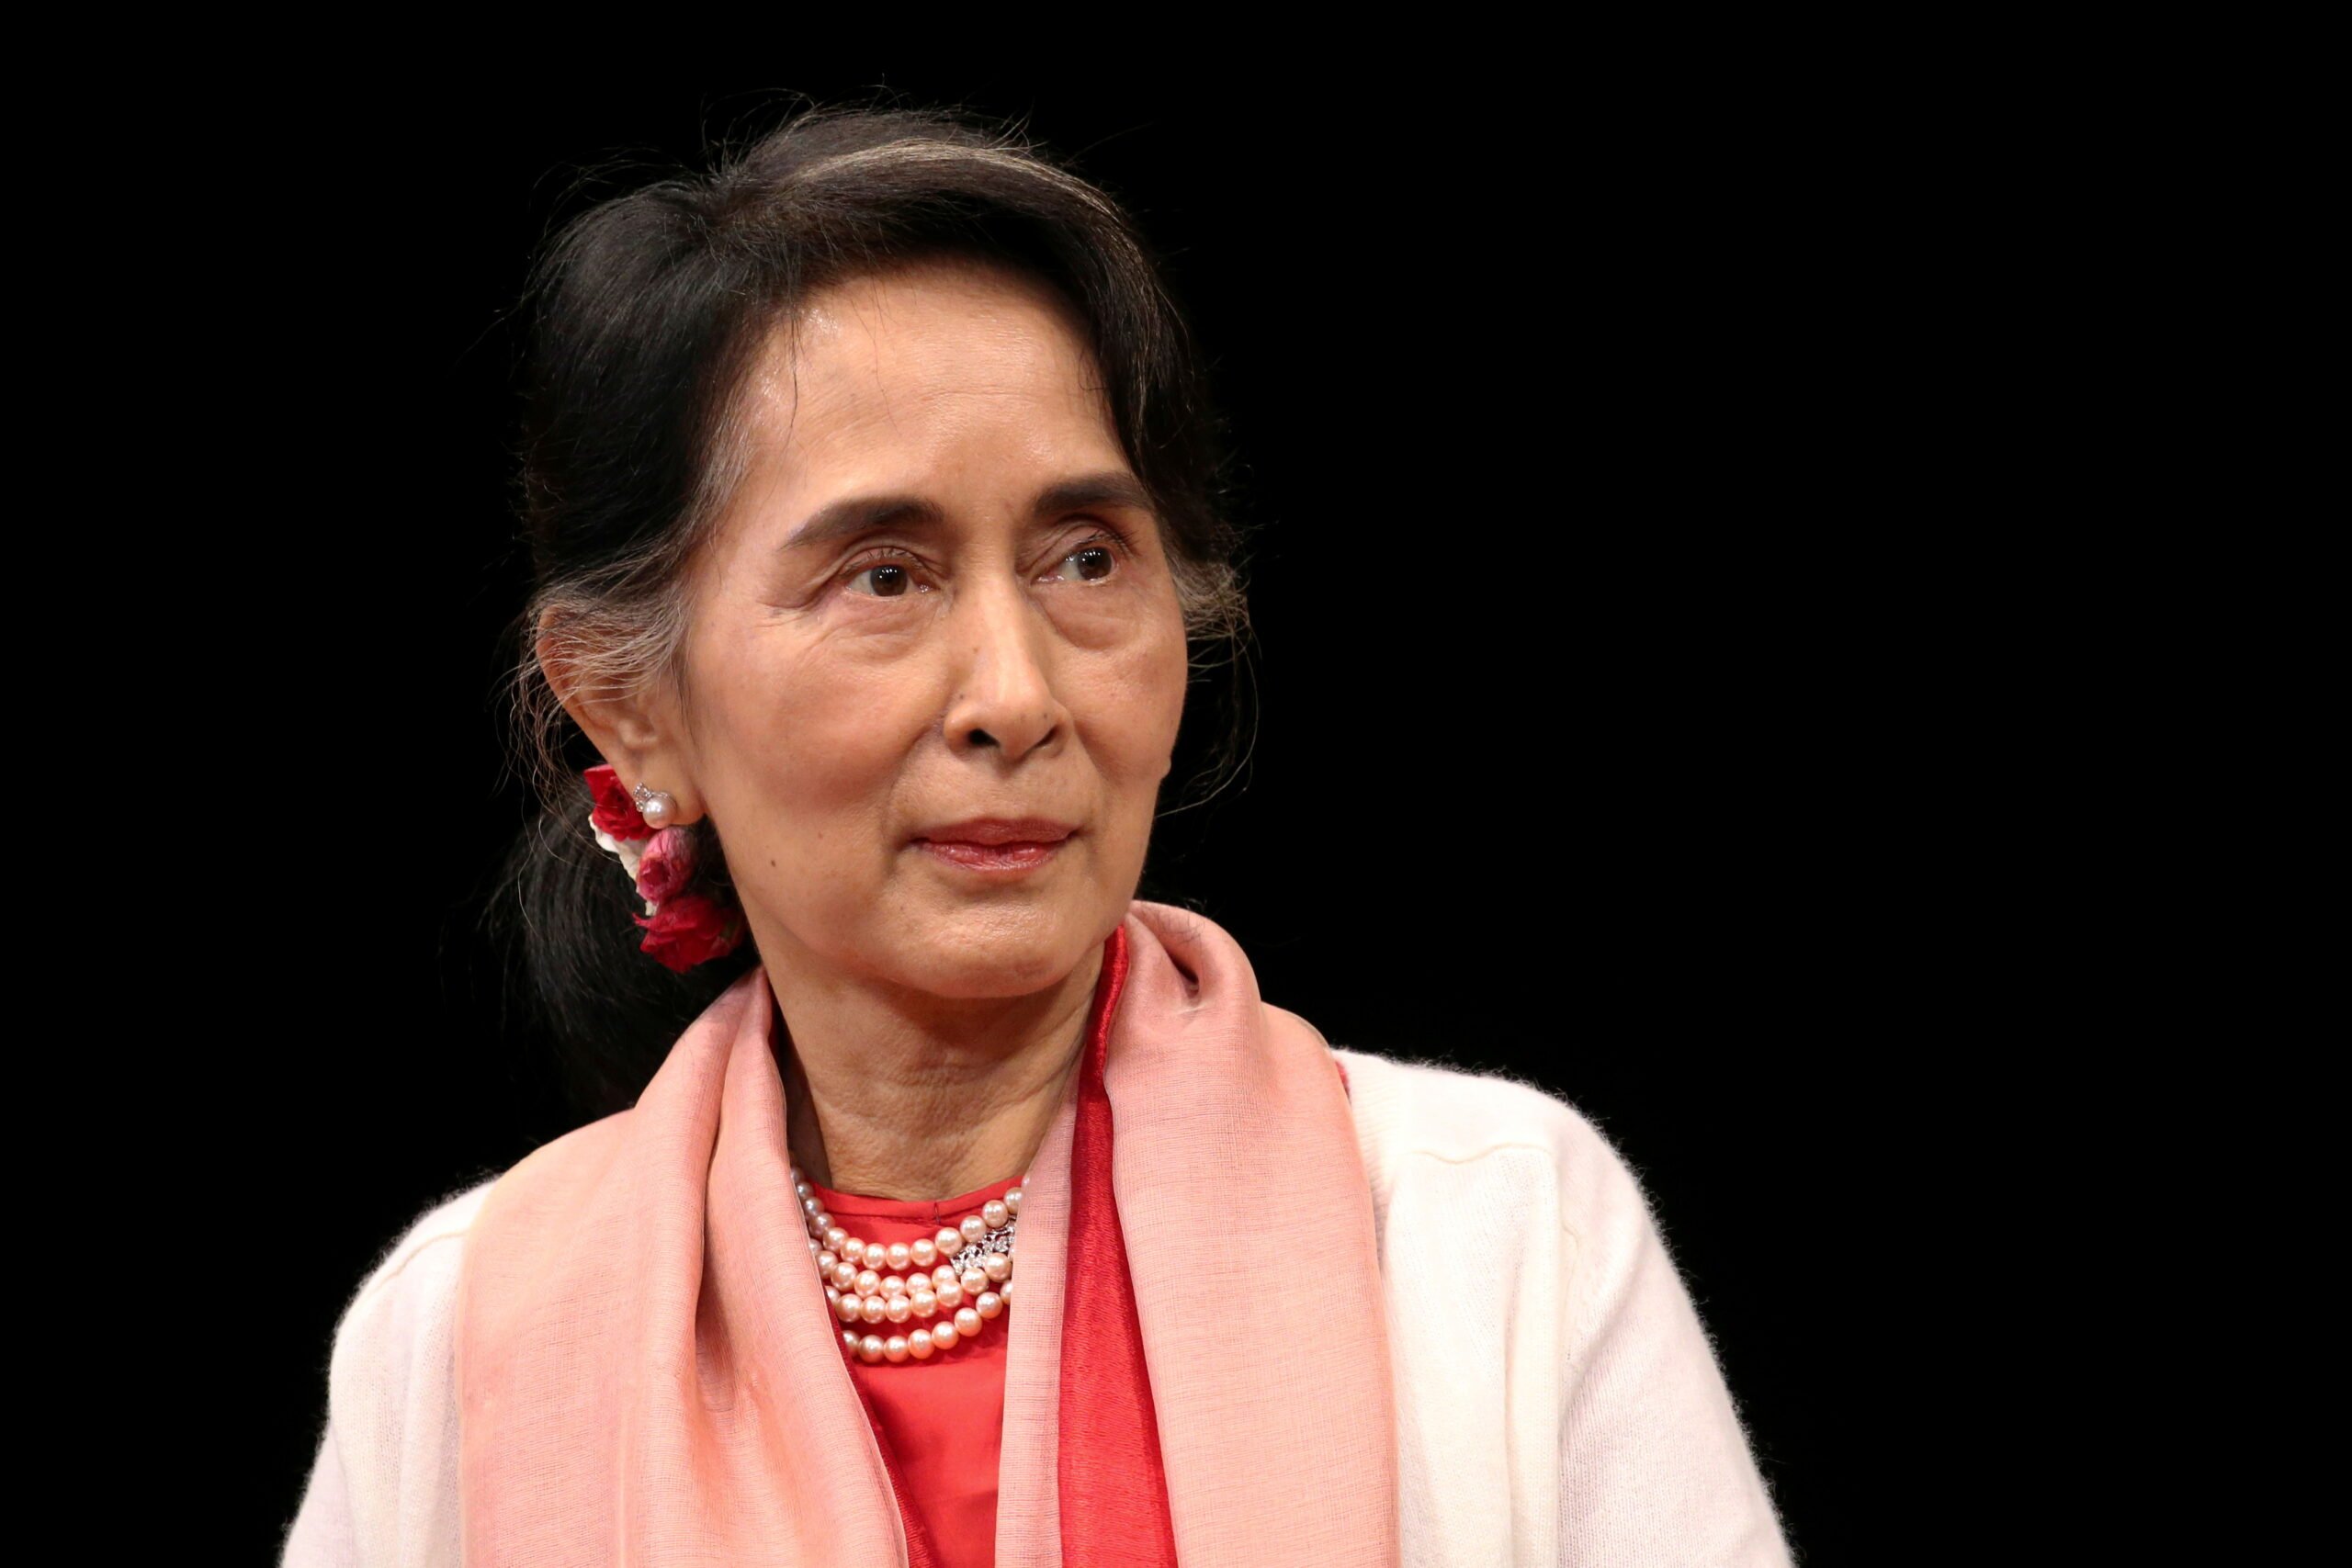 Ο στρατός της Μιανμάρ καταλαμβάνει την εξουσία και κρατεί τον εκλεγμένο ηγέτη Aung San Suu Kyi (Ενημερώθηκε)